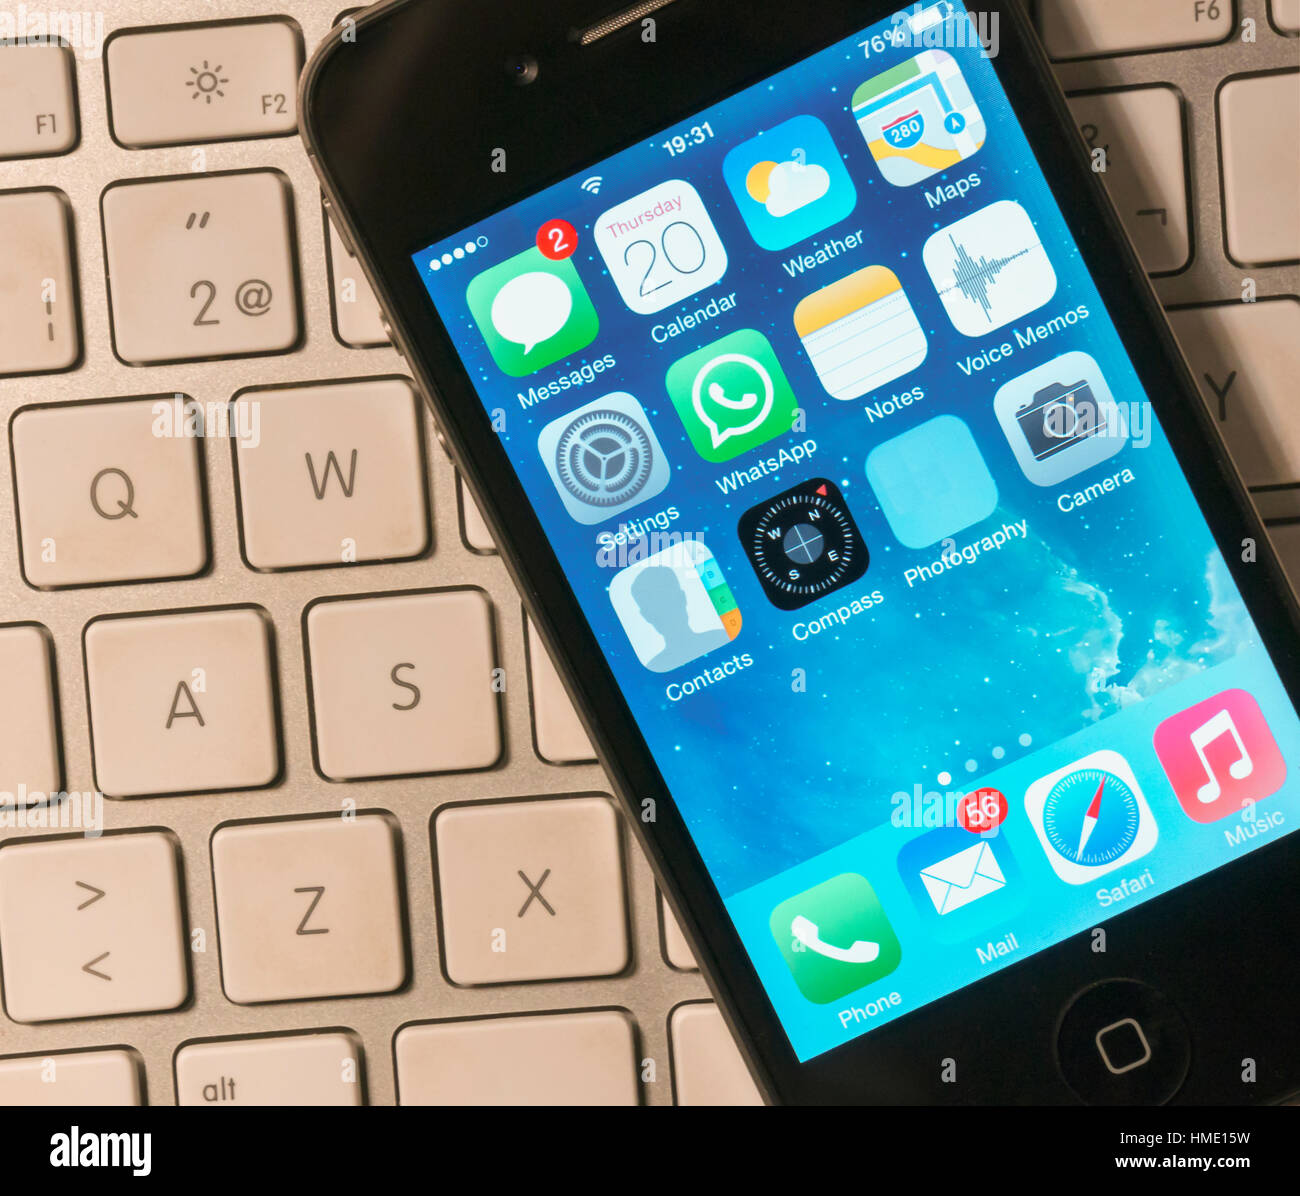 L'iphone 4s sur le dessus d'un clavier Apple Photo Stock - Alamy